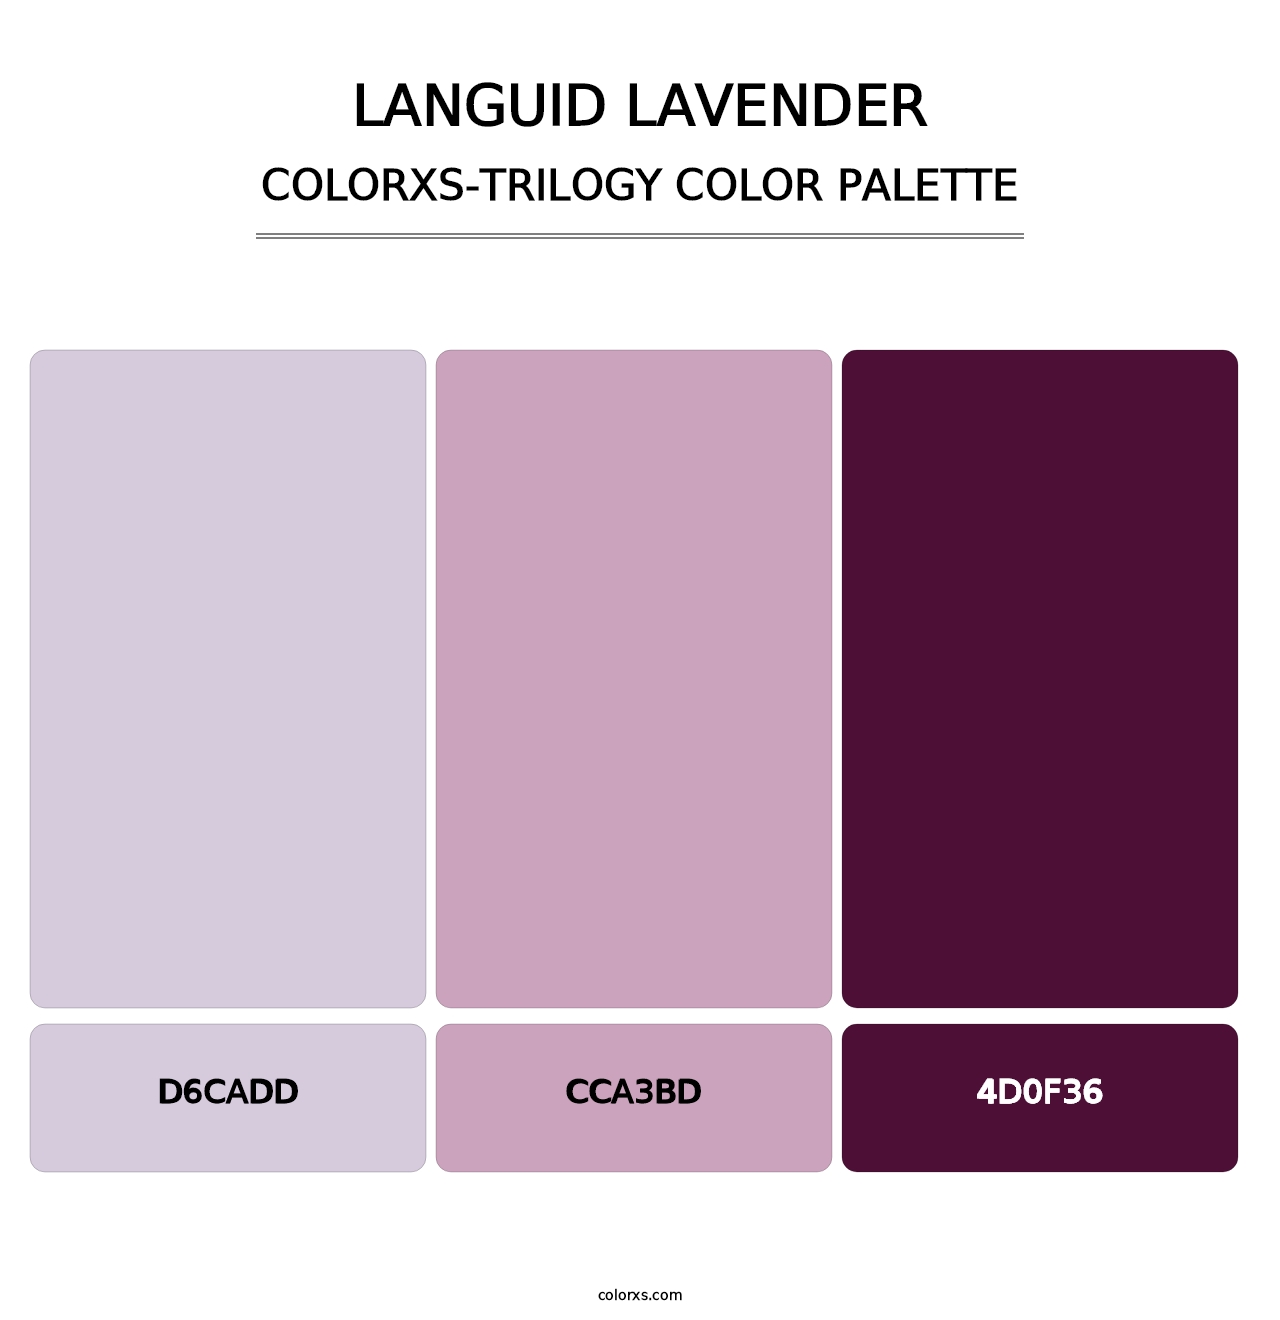 Languid Lavender - Colorxs Trilogy Palette